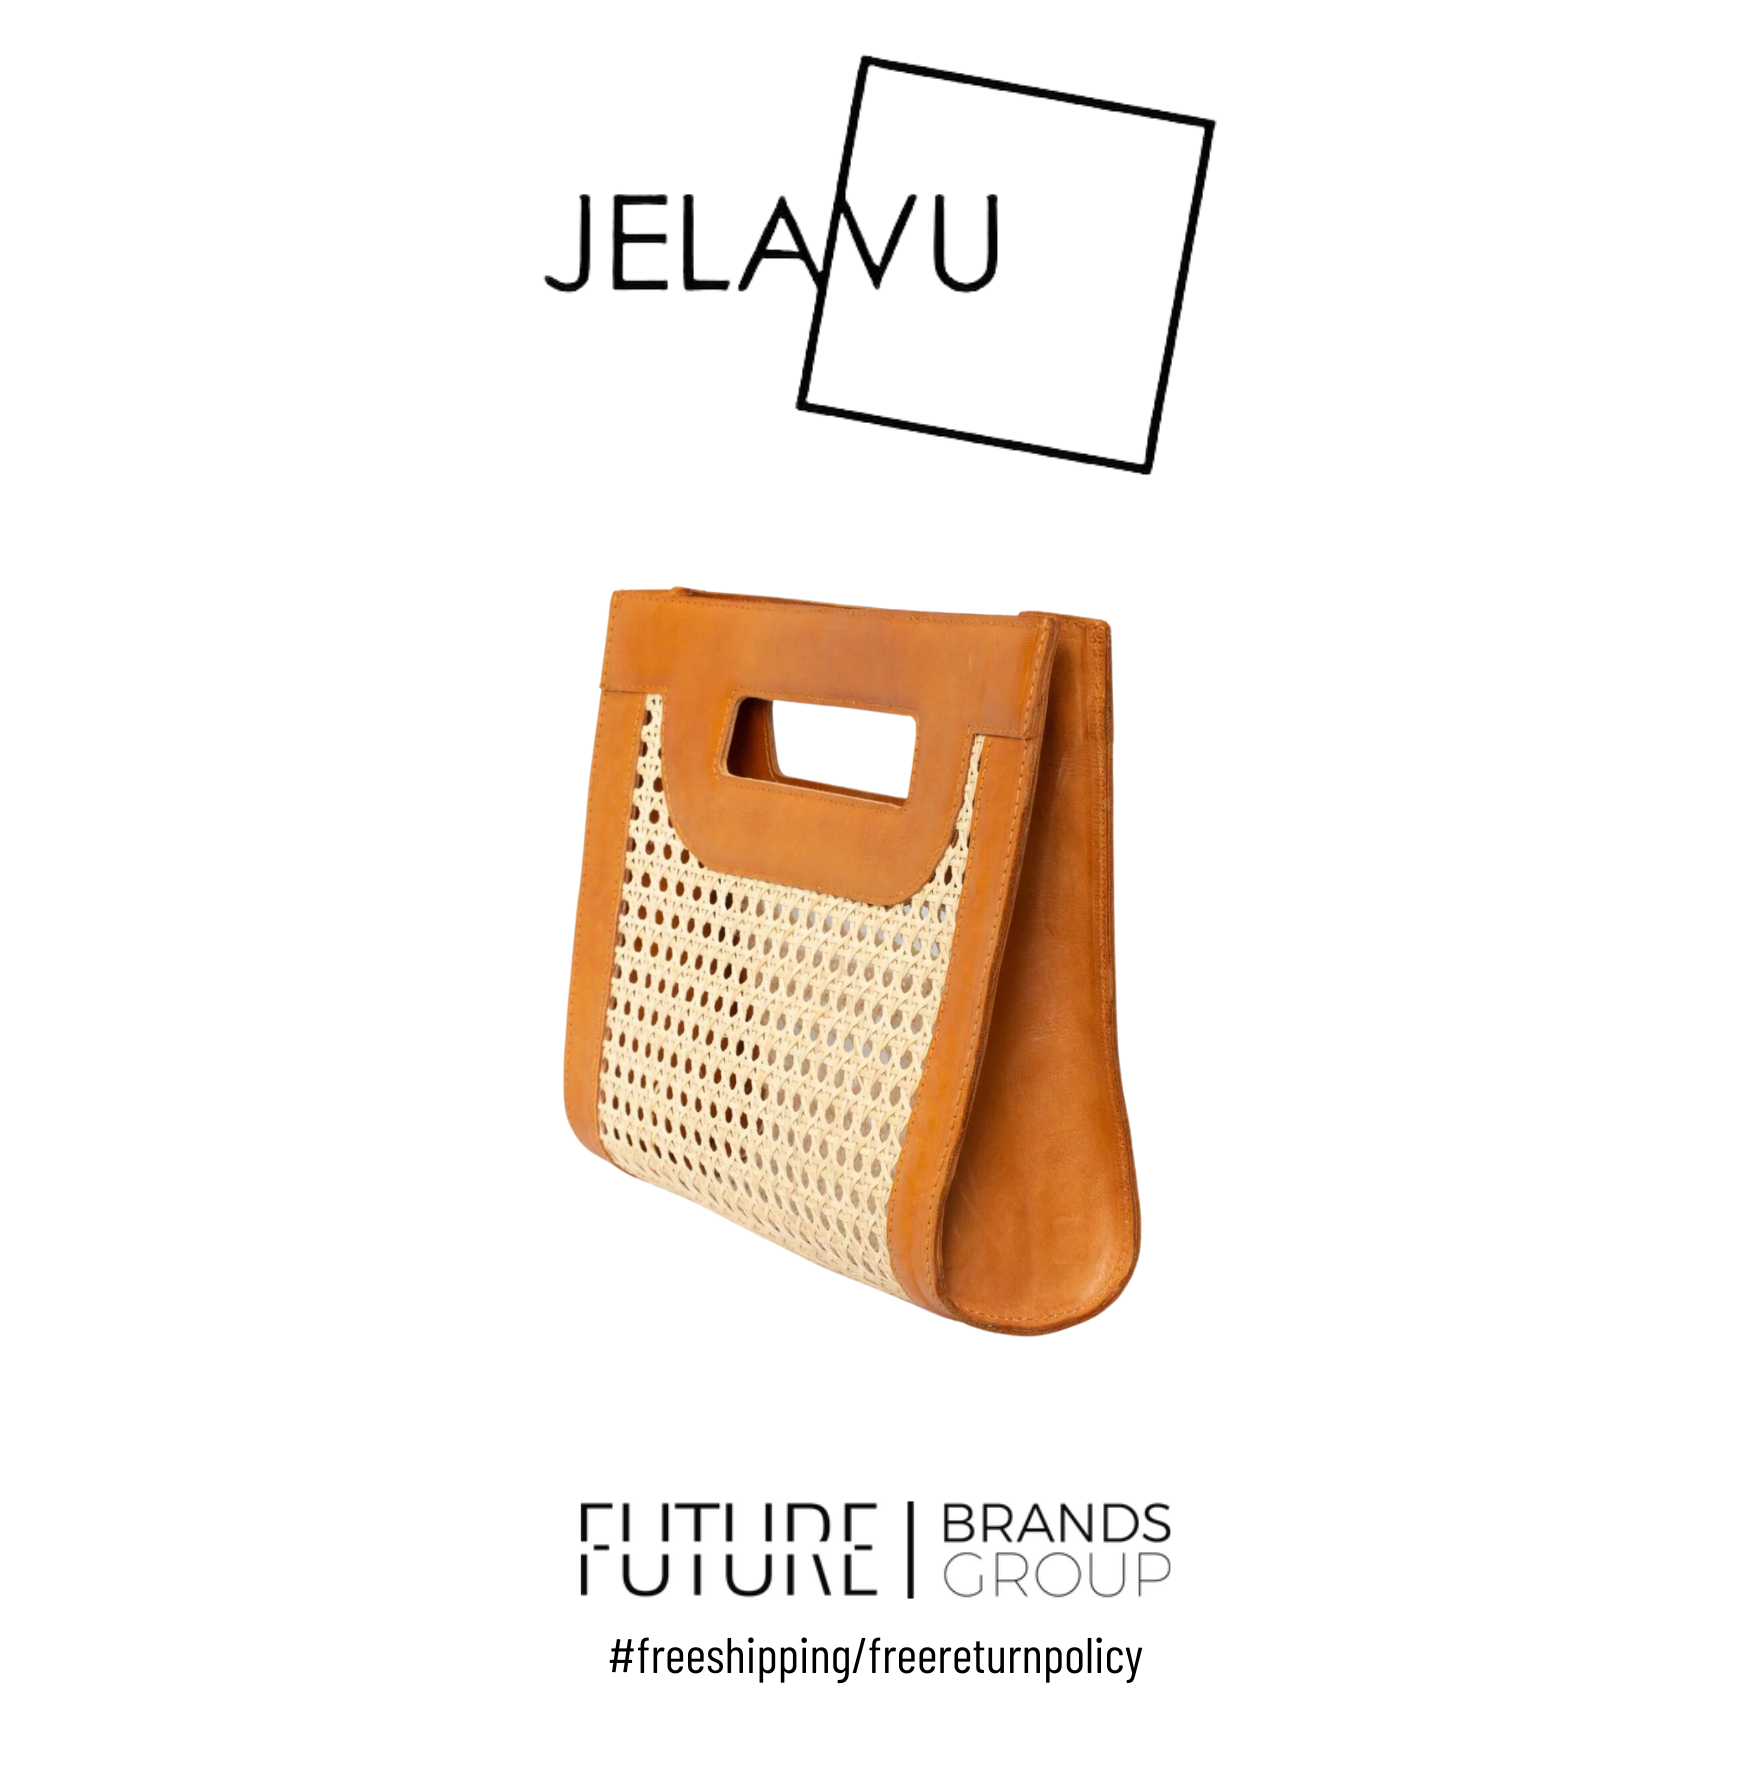 Jelavu | Venice Medium Cane Leather Clutch | Future Brands Group